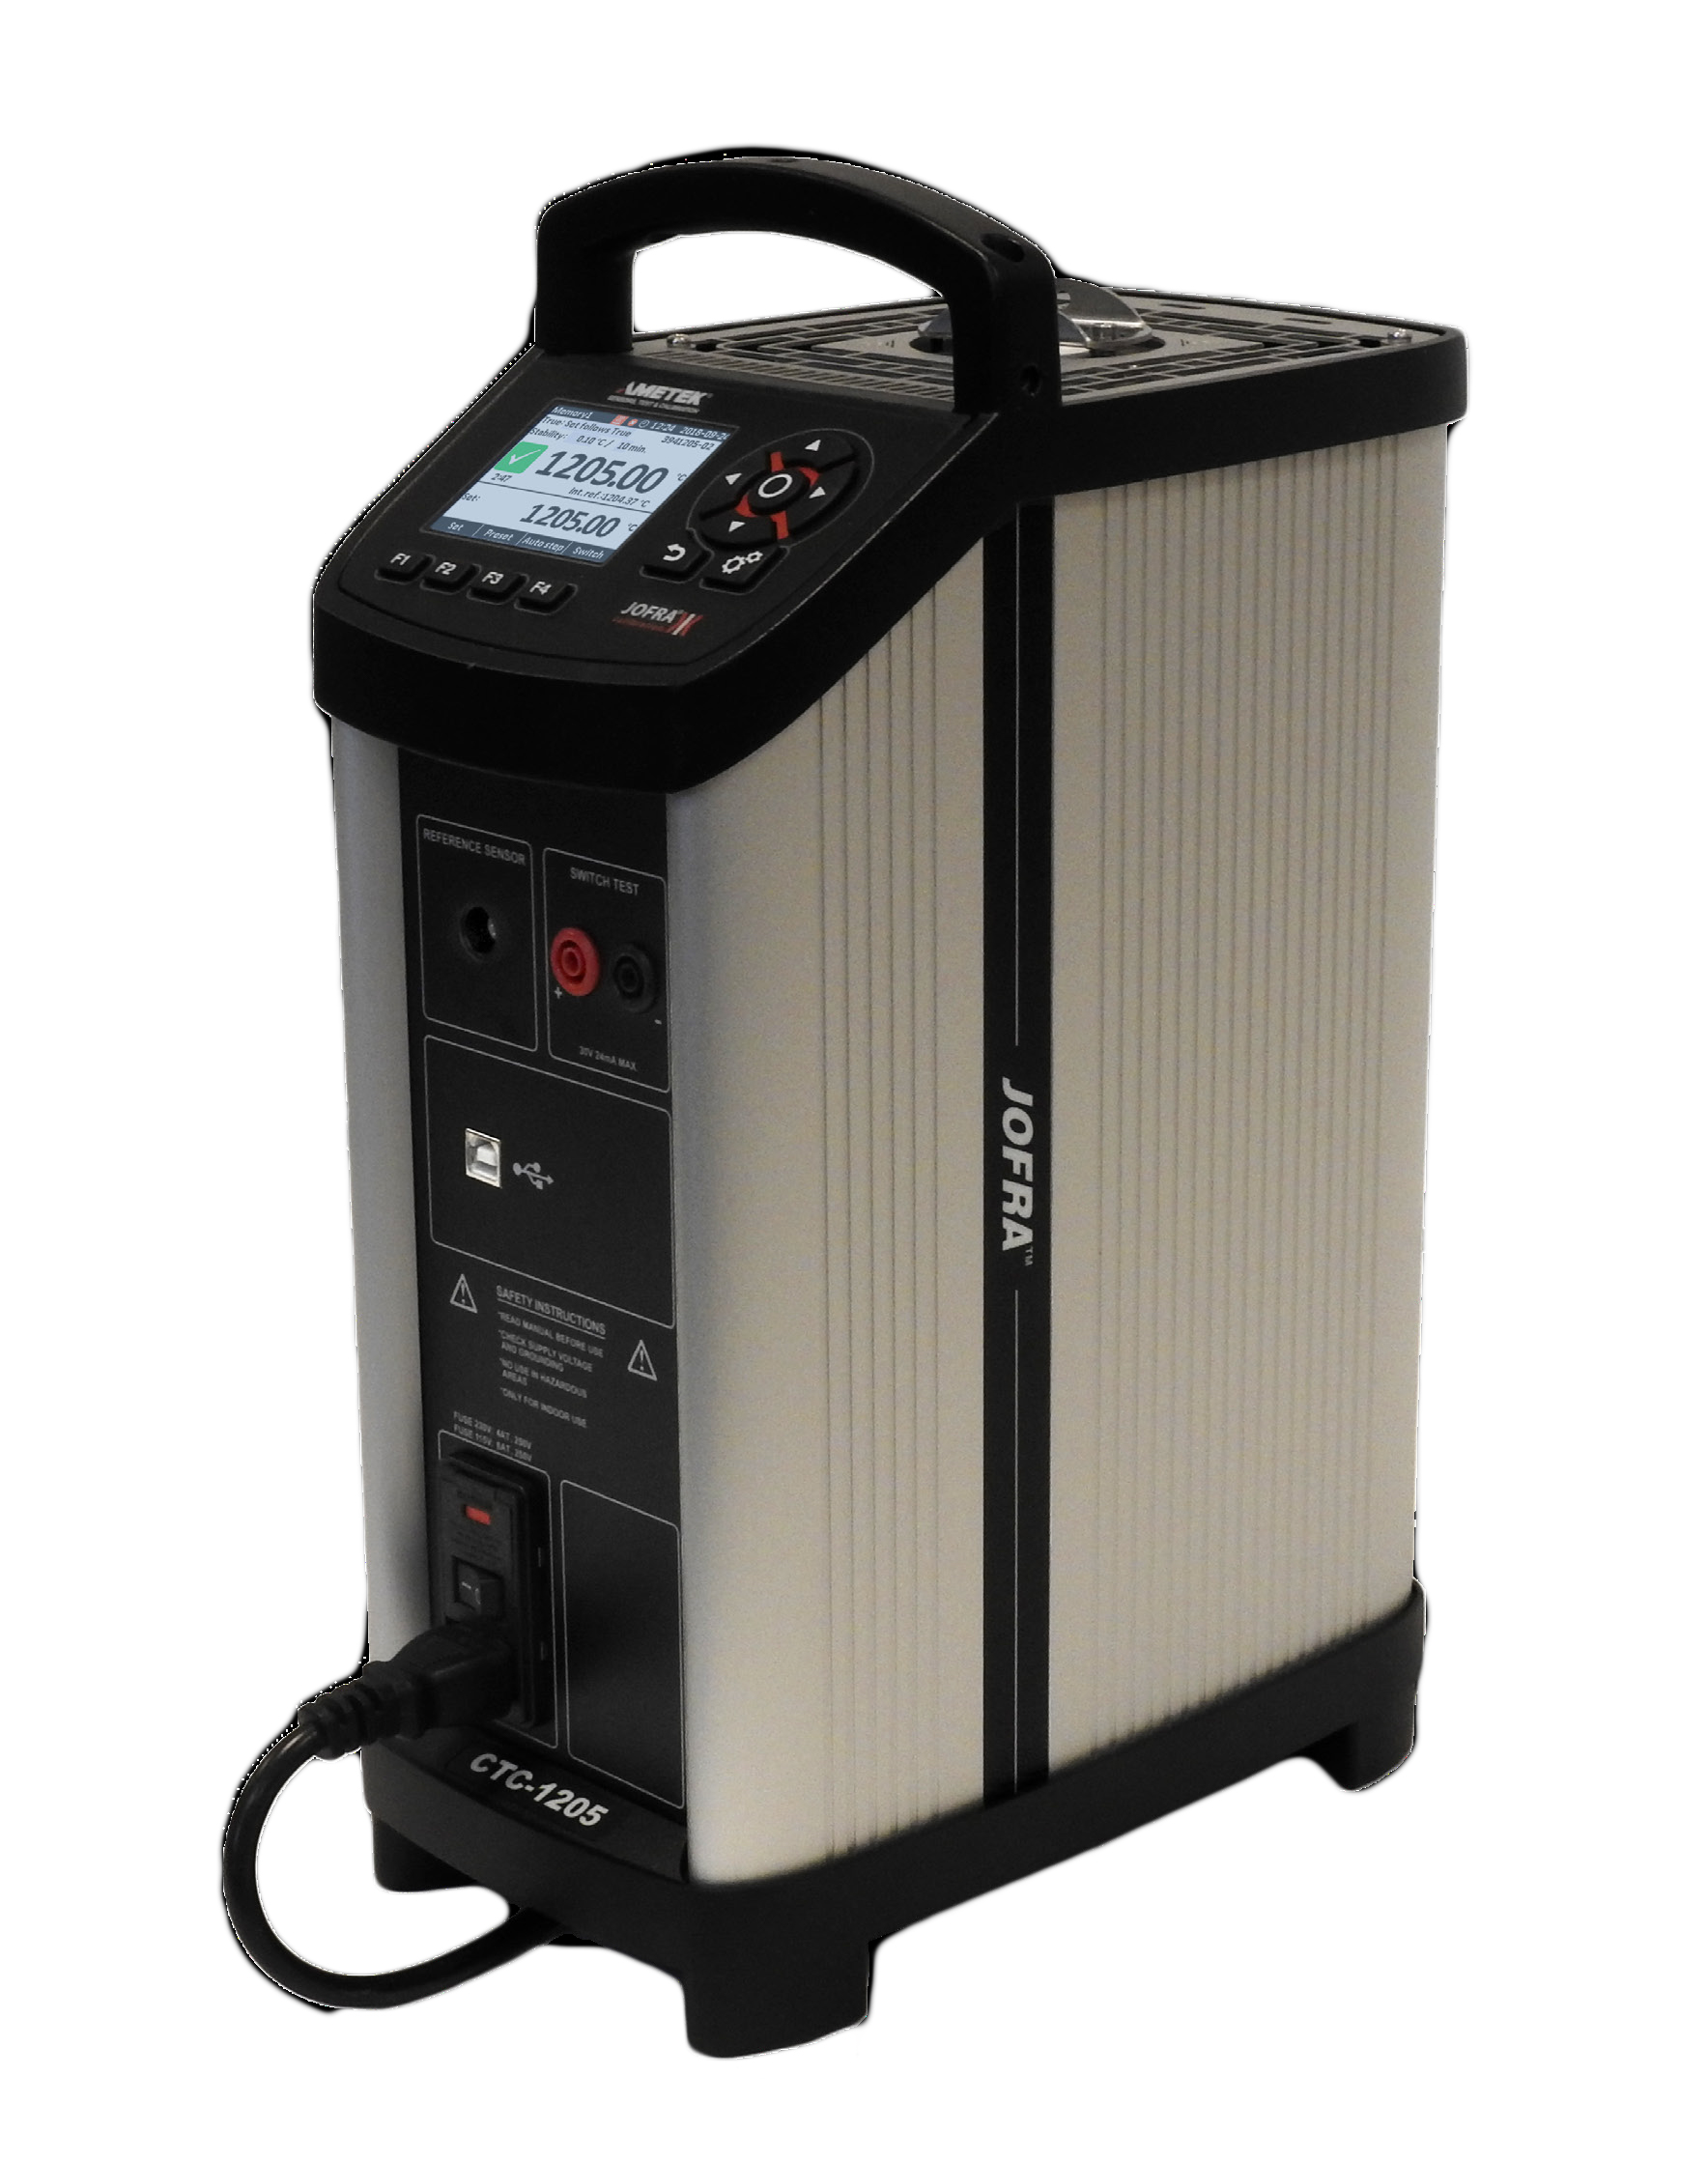 Ametek Jofra CTC1205 Dryblock Temperature Calibrator